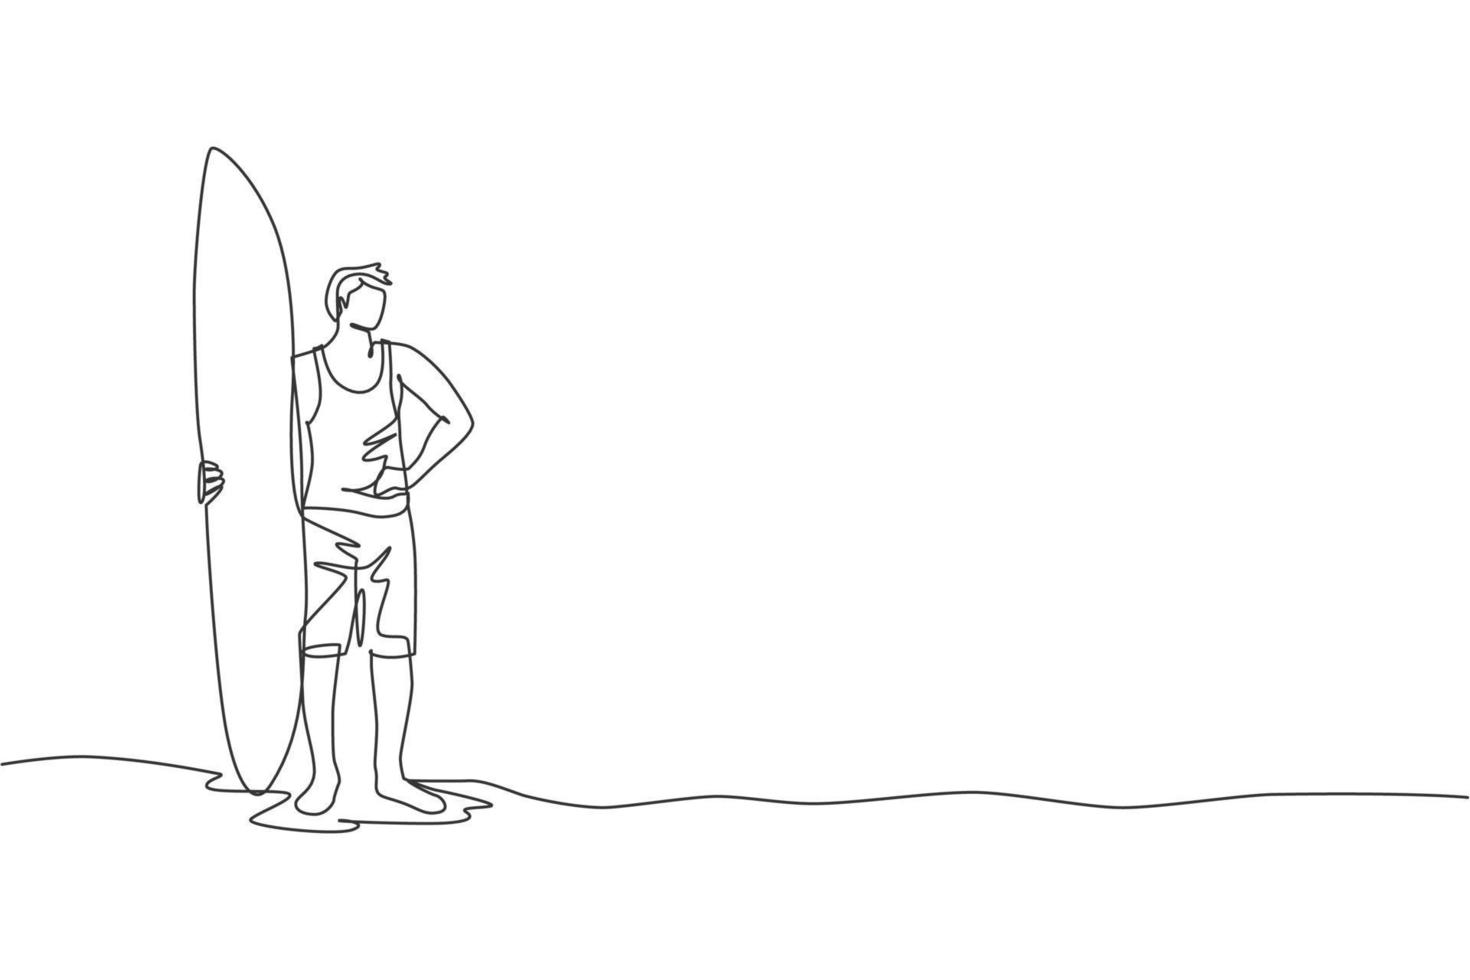 un seul dessin au trait d'un jeune surfeur sportif debout et tenant une longue planche de surf à l'illustration vectorielle graphique de la plage de sable. concept de sports nautiques extrêmes. conception moderne de dessin en ligne continue vecteur